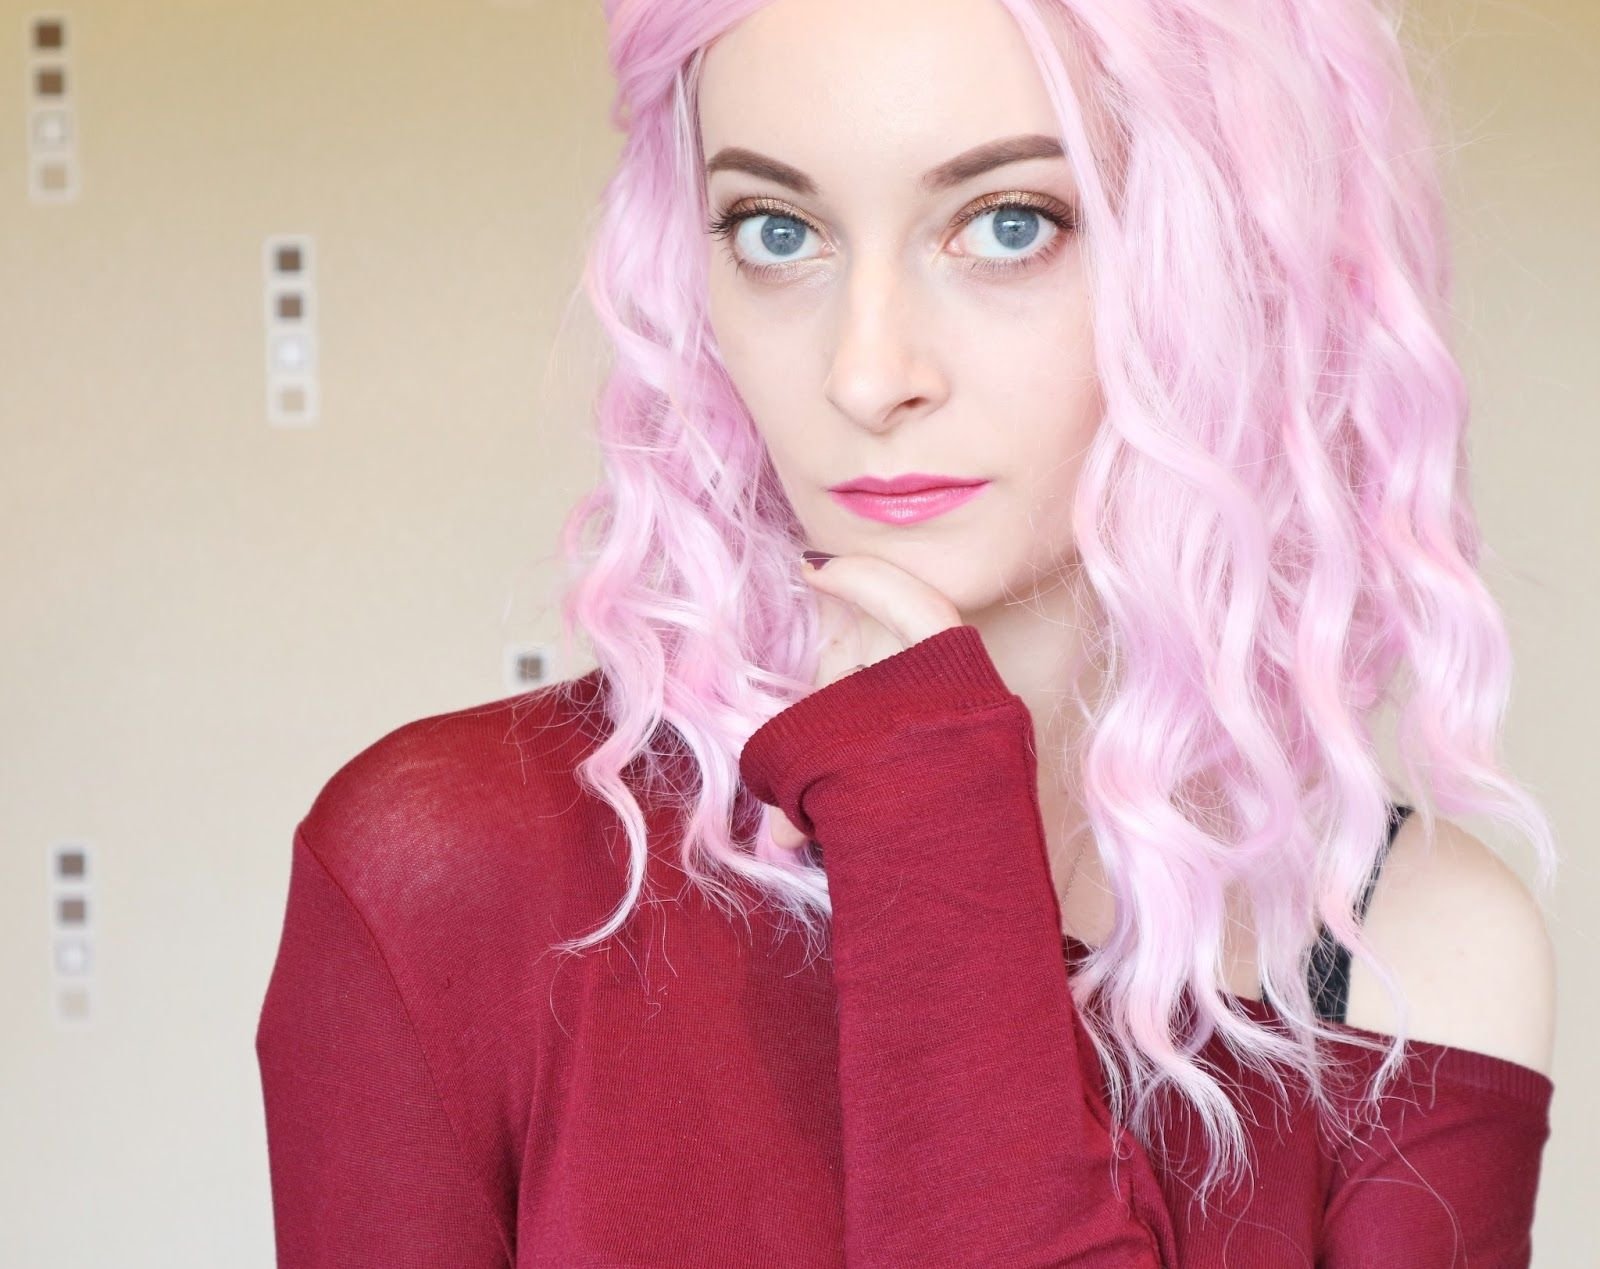 Розовые волосы. Знаменитости с розовыми волосами. Блогеры с розовыми волосами. Образ с розовыми волосами.